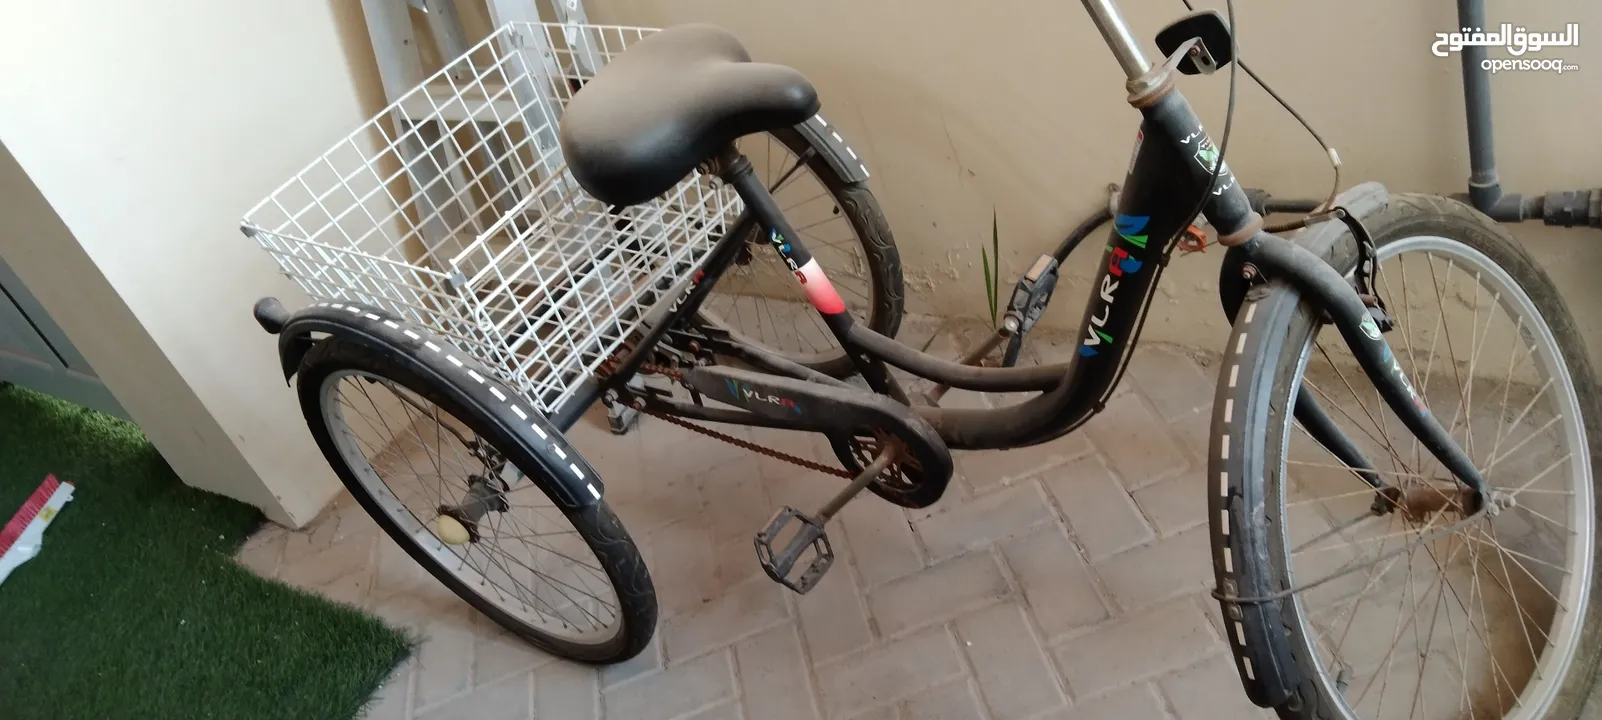 دراجه هوائيه 3 عجلات للبيع - Opensooq